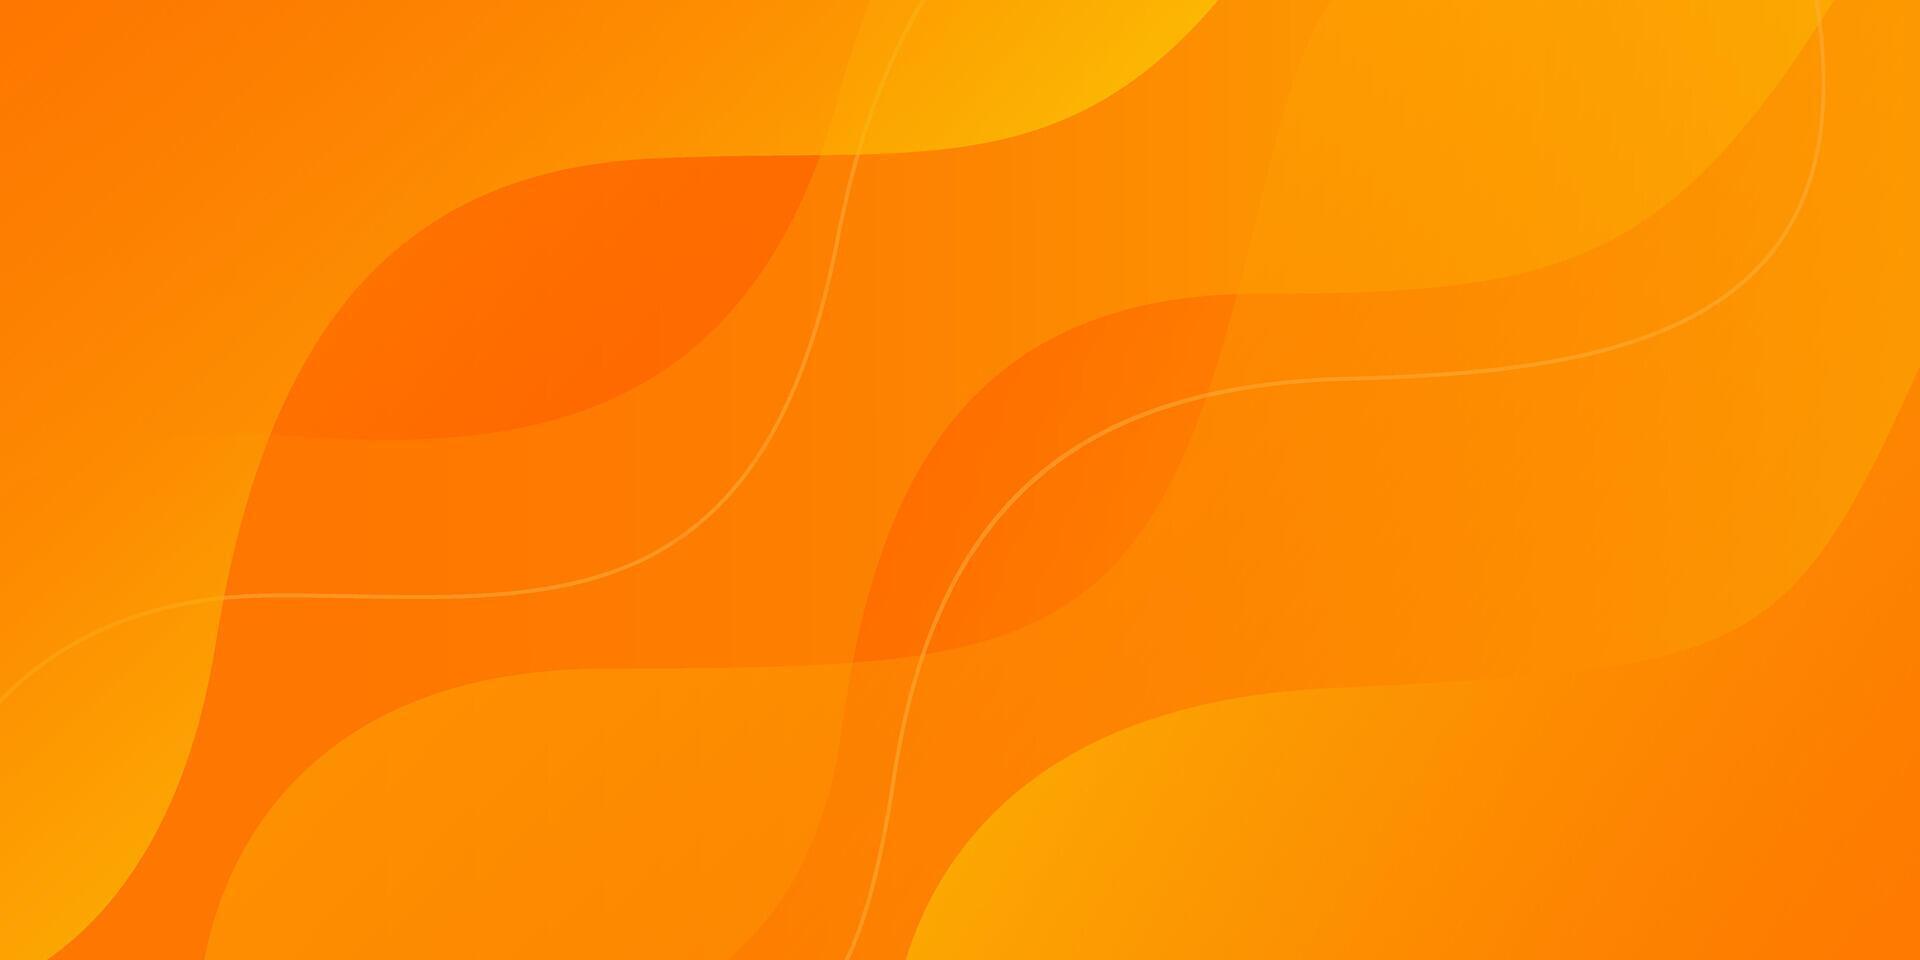 abstract kleurrijk oranje kromme achtergrond, oranje helling dynamisch behang met Golf vormen. geschikt voor spandoeken, Sjablonen, verkoop, evenementen, advertenties, Pagina's, web, en anderen vector